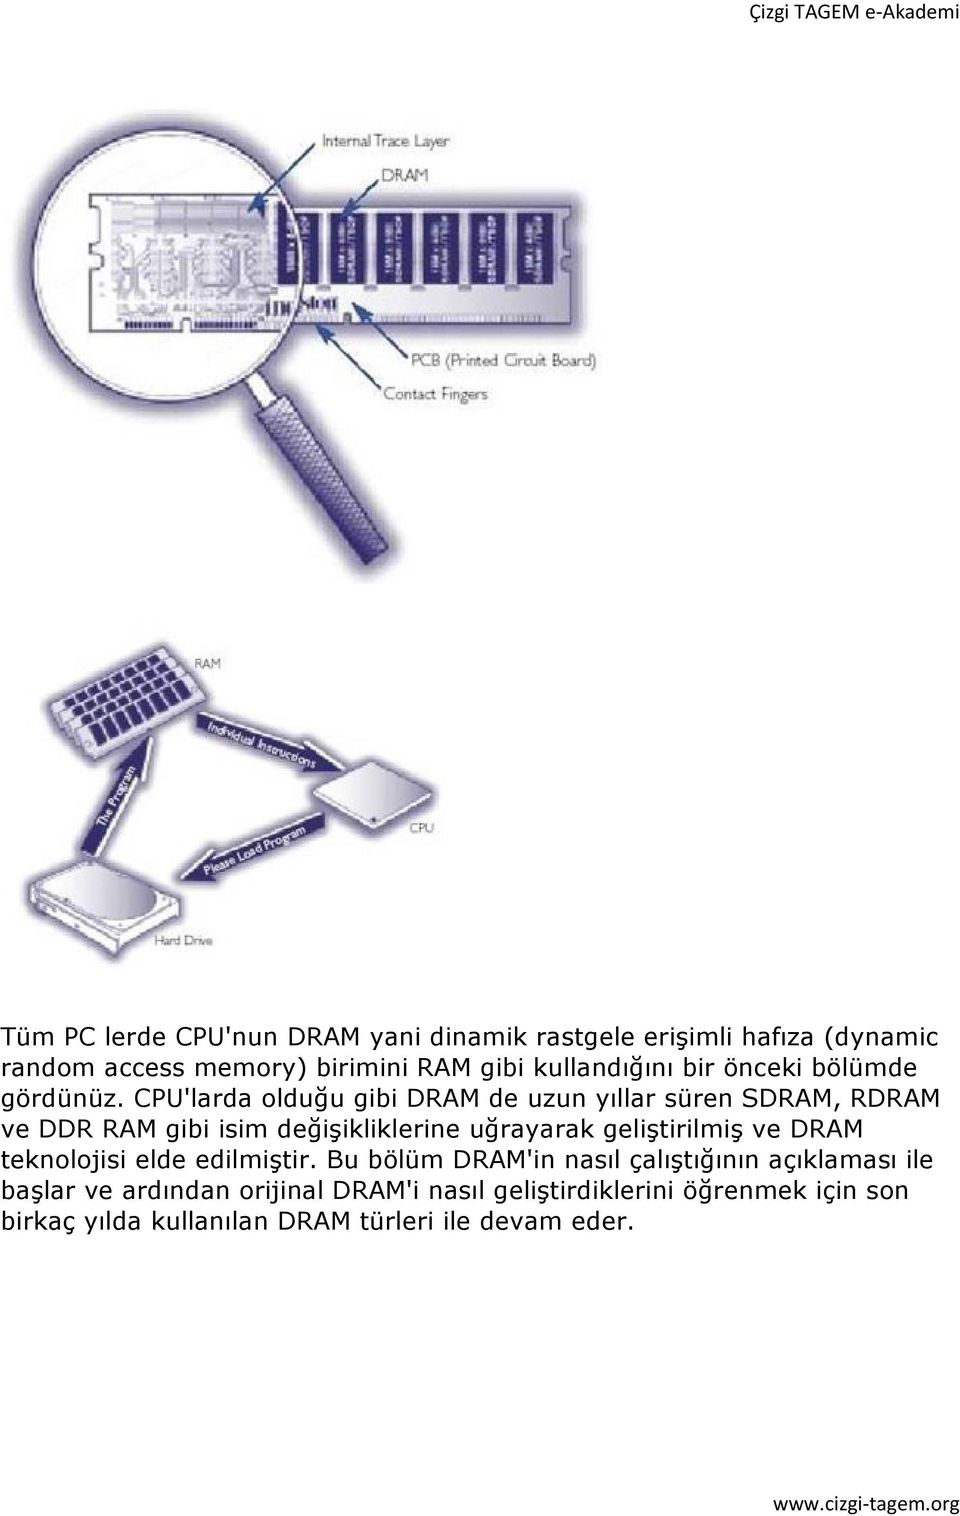 CPU'larda olduğu gibi DRAM de uzun yıllar süren SDRAM, RDRAM ve DDR RAM gibi isim değişikliklerine uğrayarak geliştirilmiş